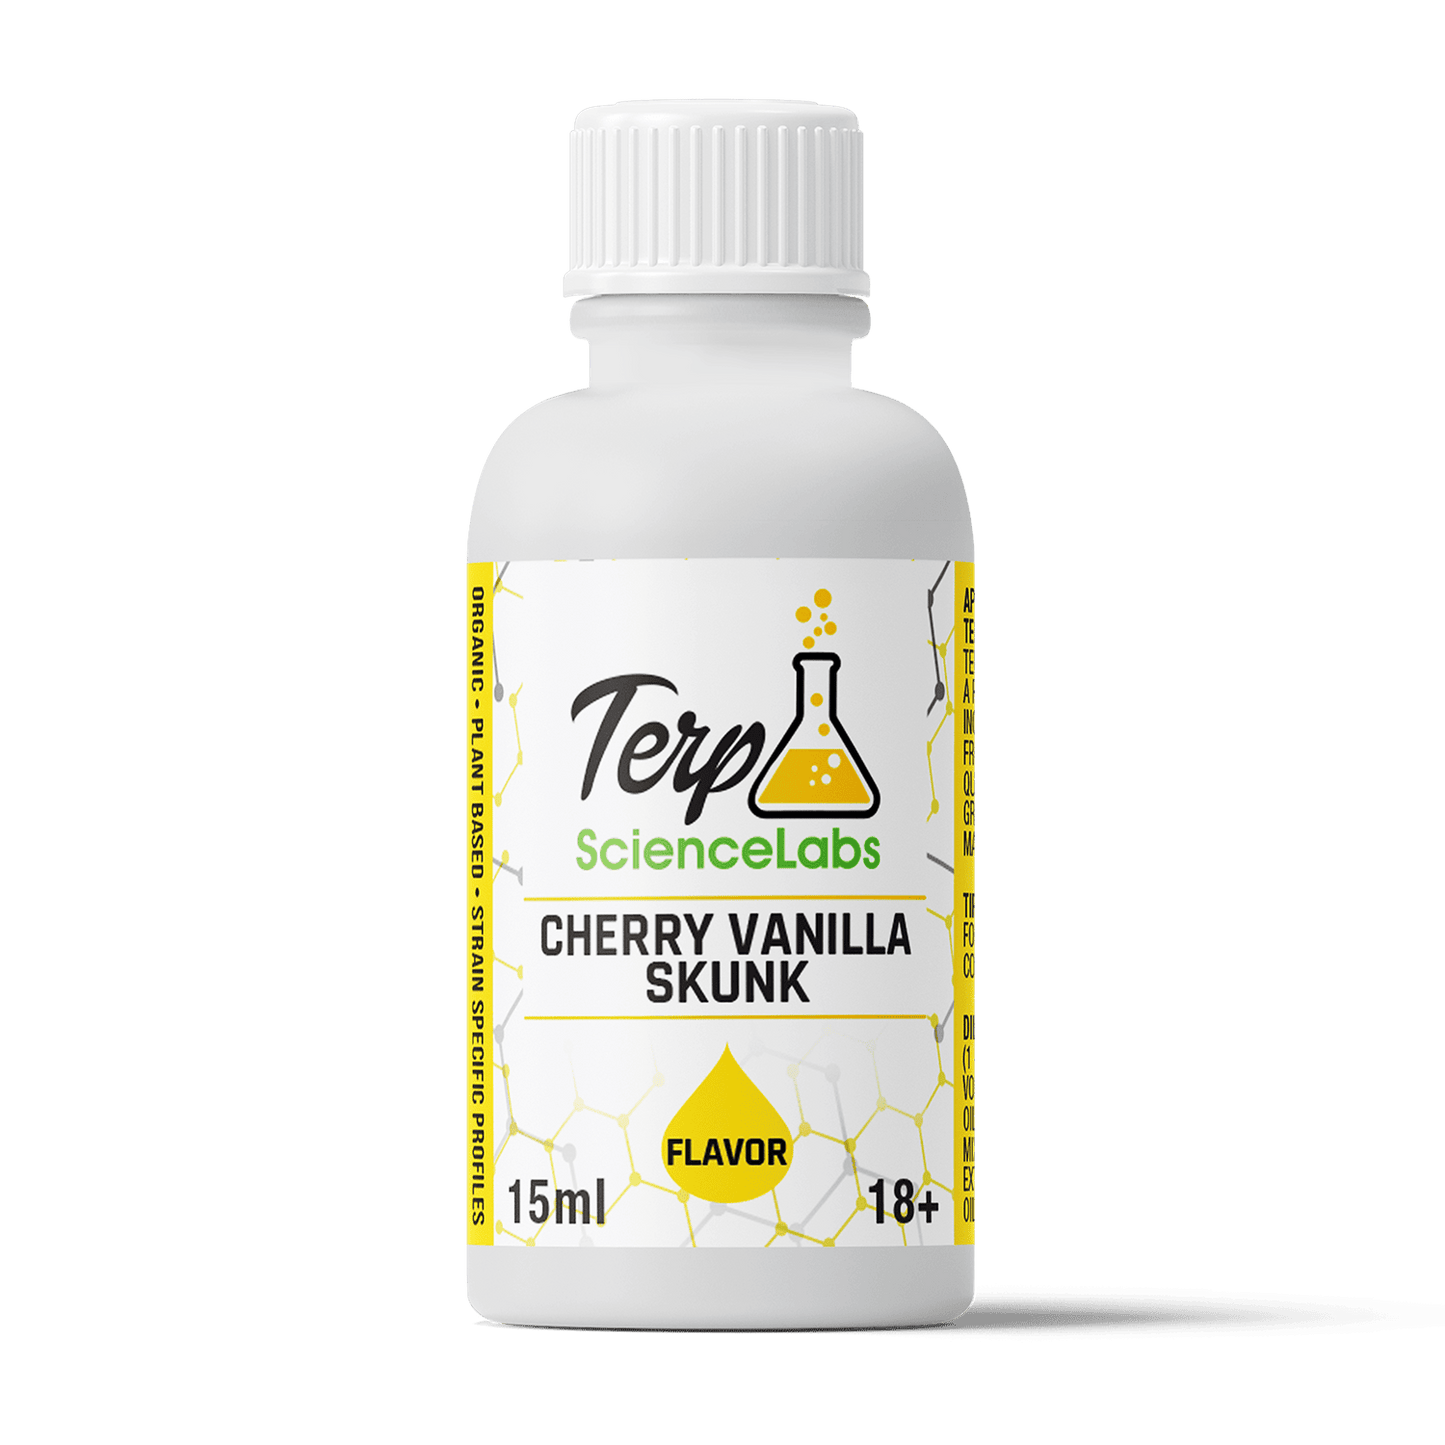 Cherry Vanilla Skunk Flavor Profile